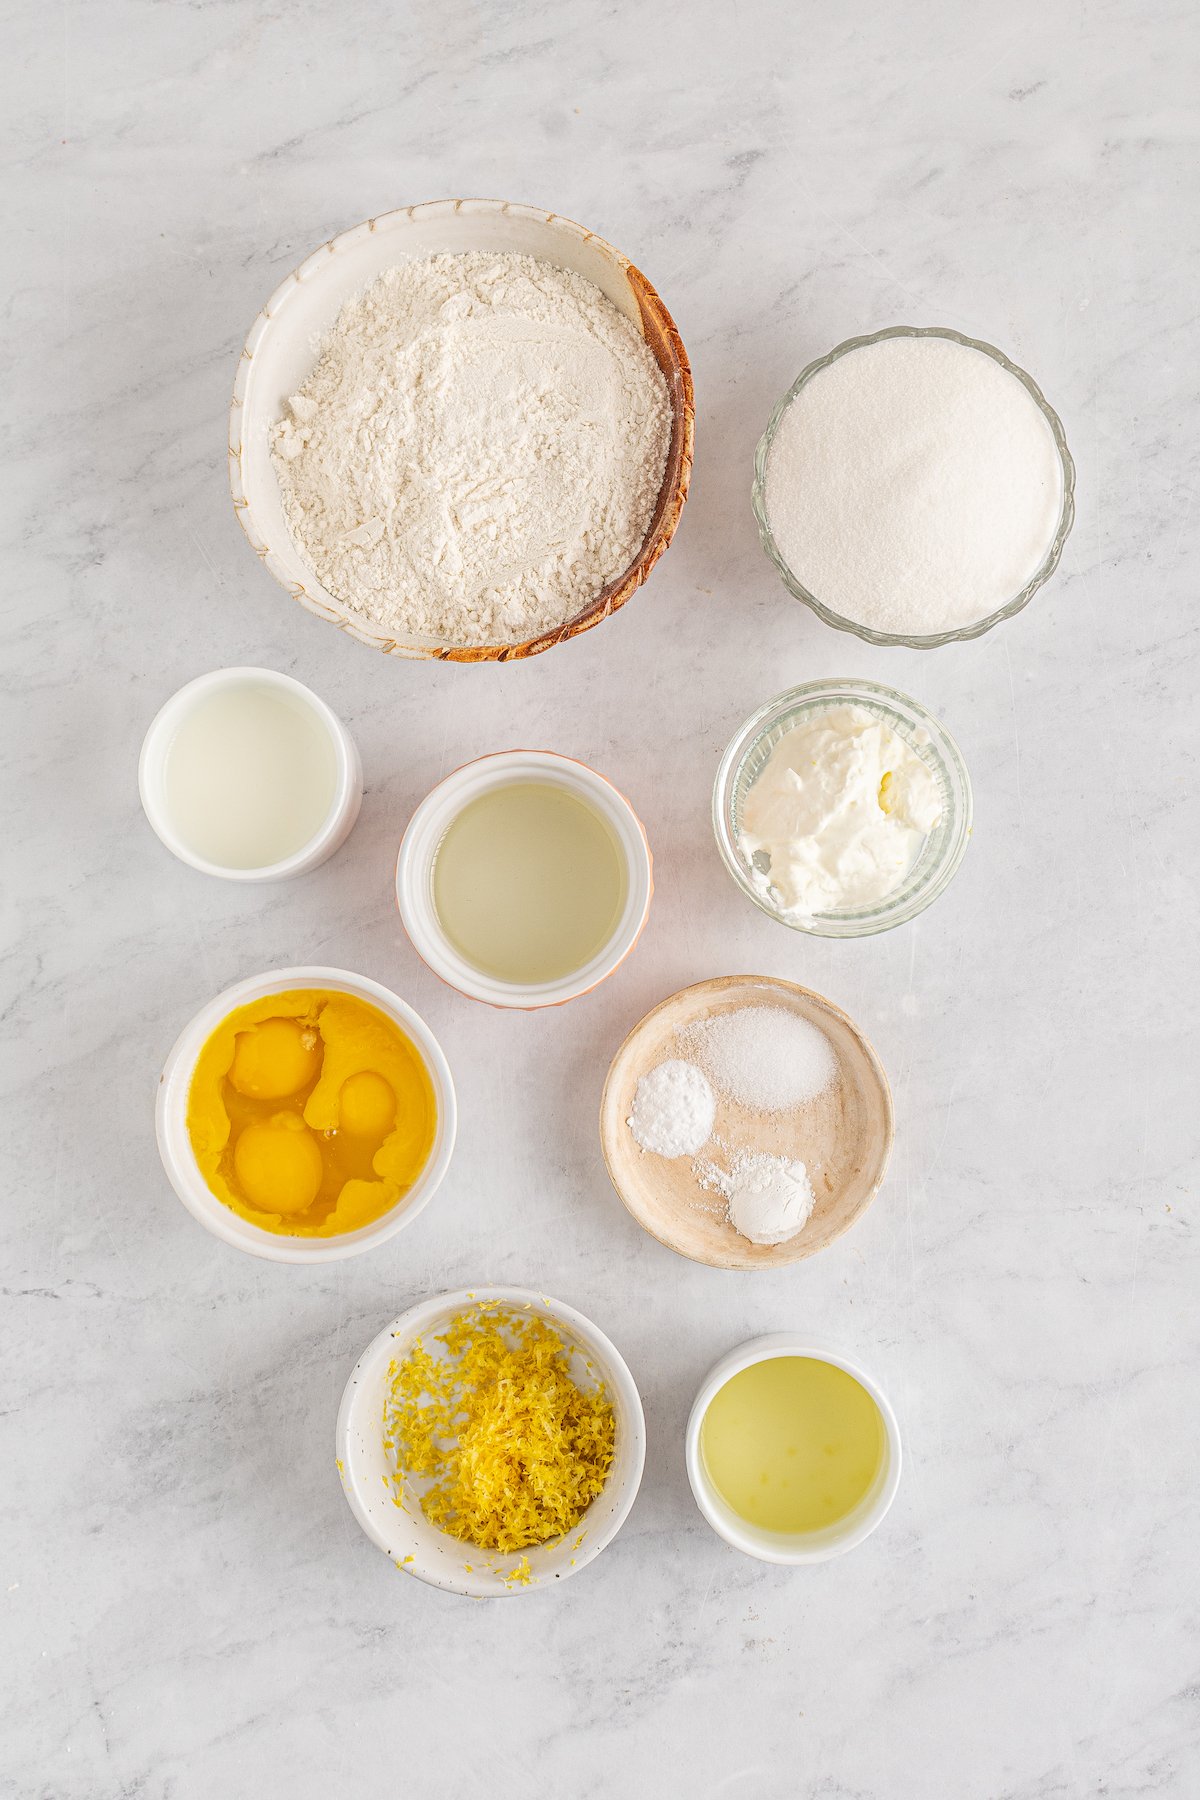 From top left: Flour, white sugar, milk, oil, sour cream, eggs, baking powder, baking soda, salt, lemon zest, lemon juice.